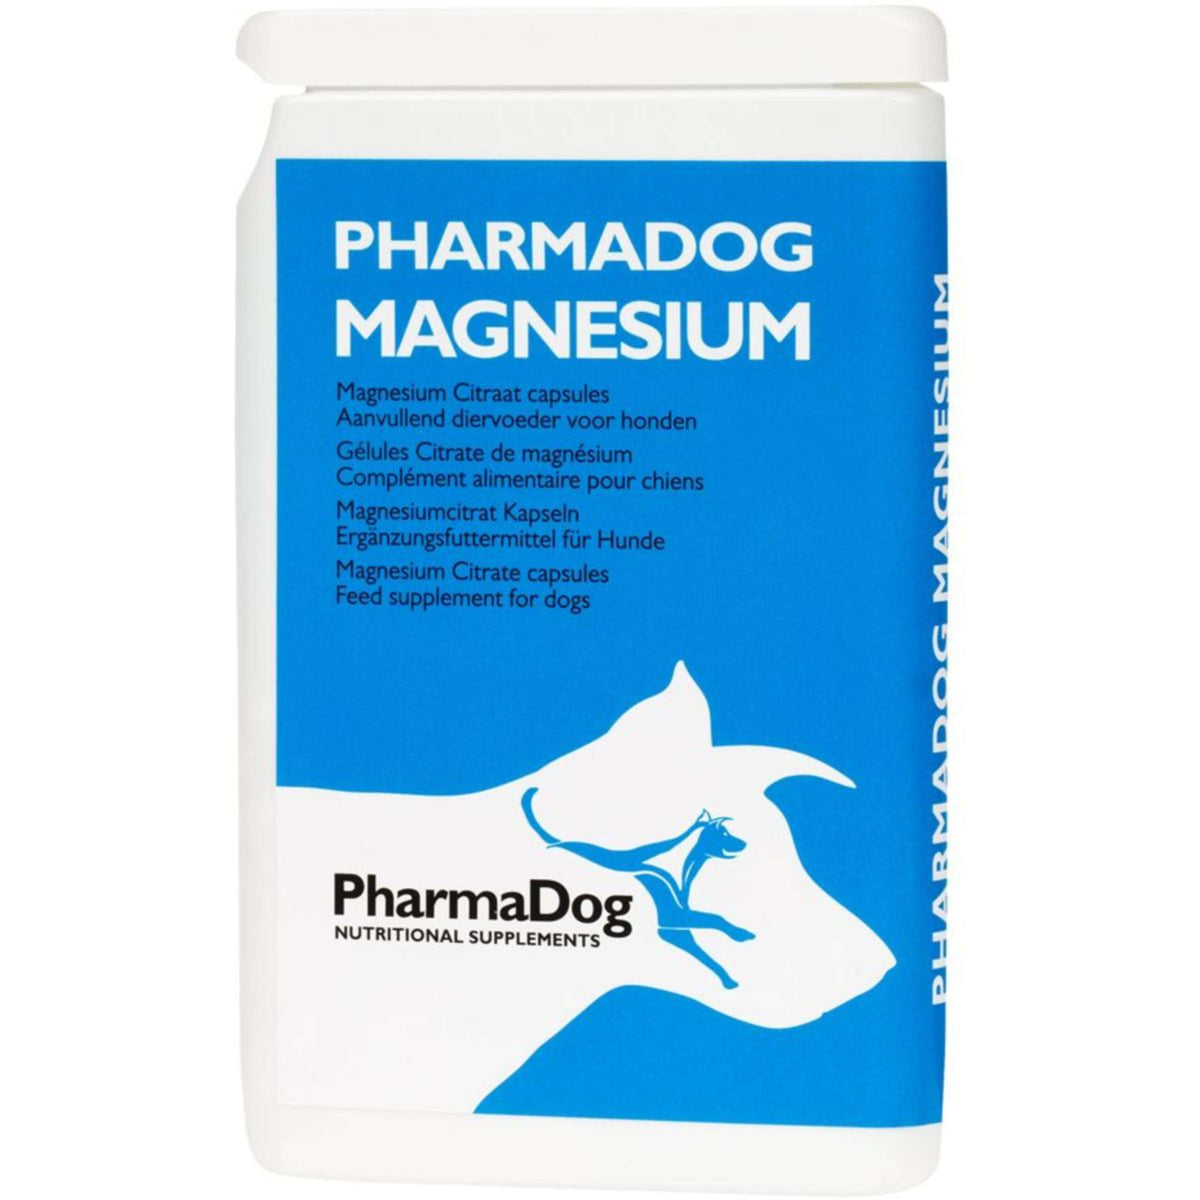 PharmaDog Magnesium